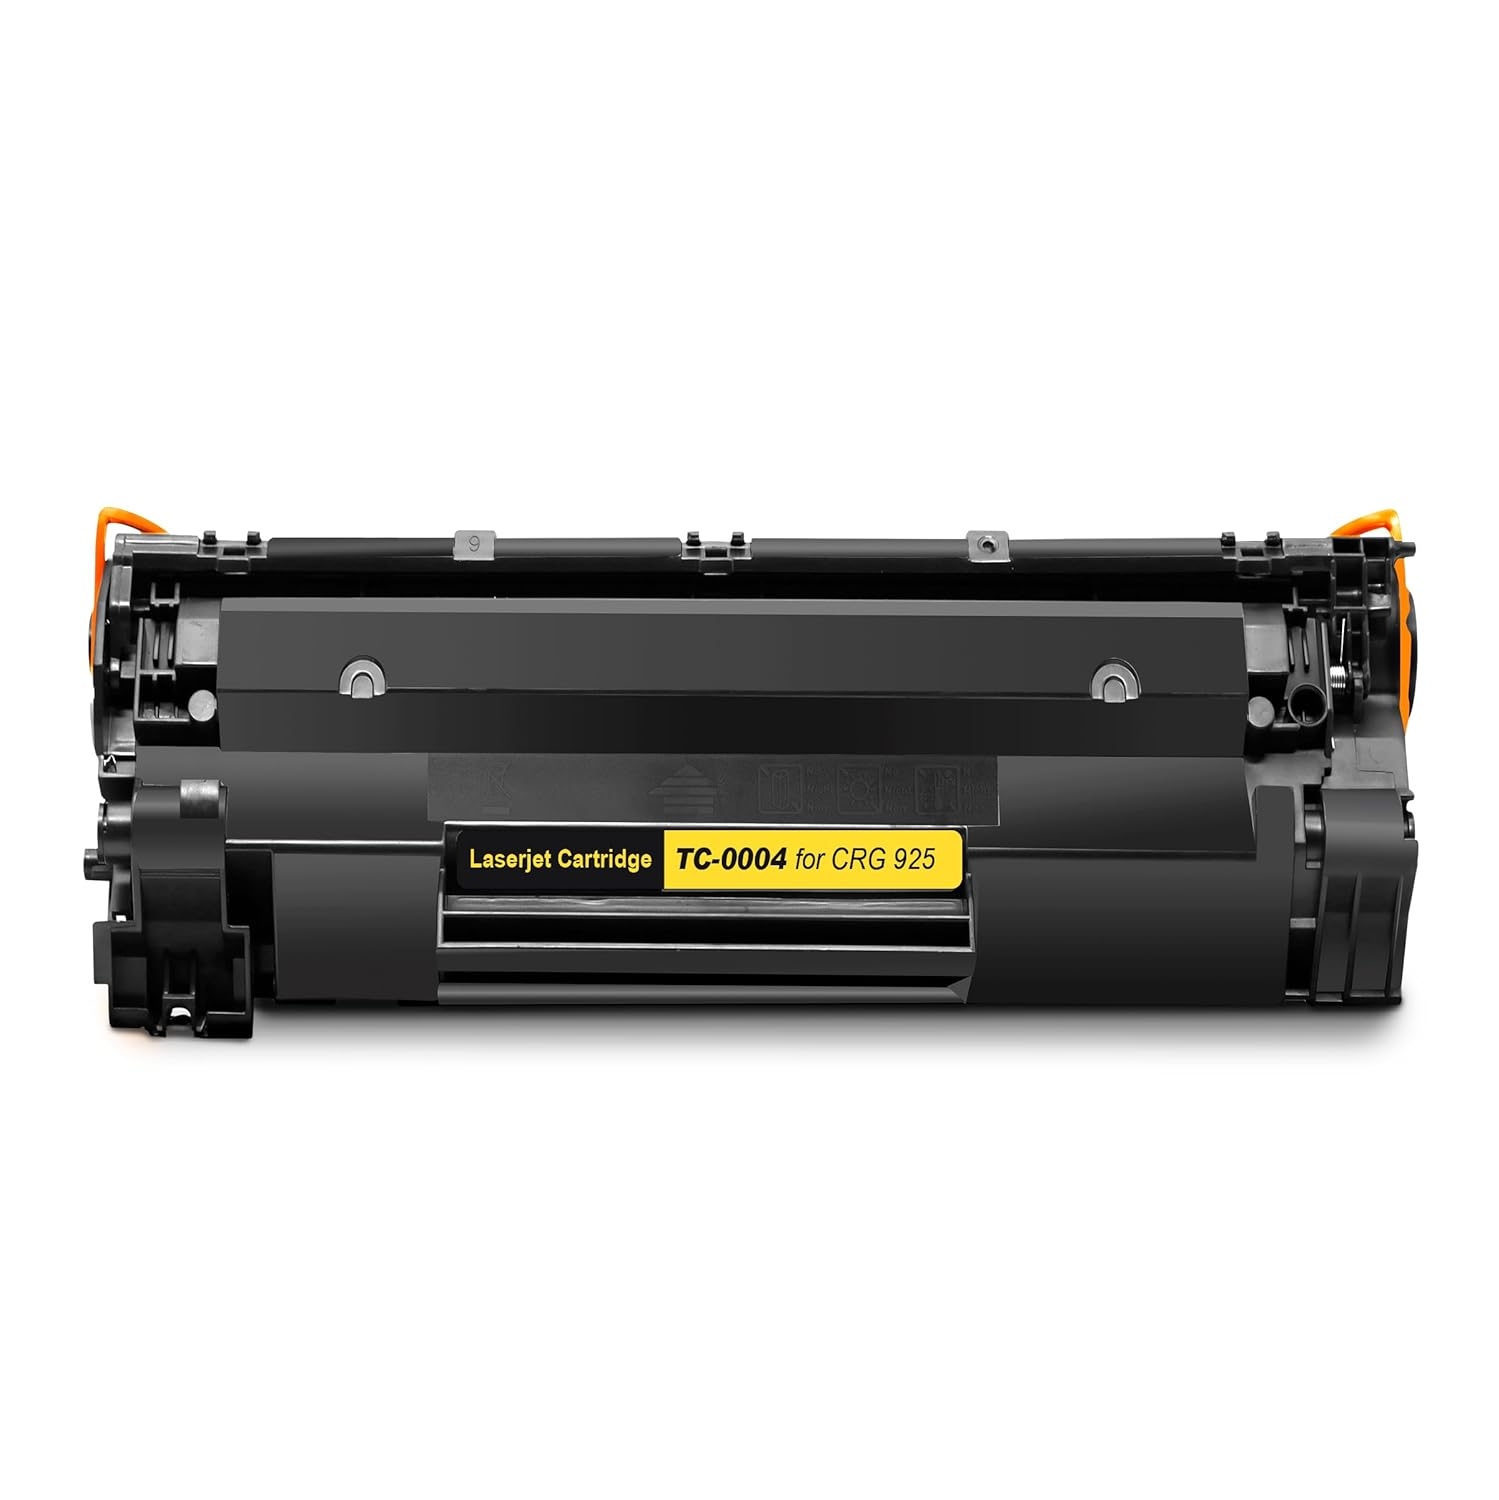 FRONTECH CRG-925 Laserjet Toner Cartridge for HP Laserjet Pro P1100/ P1102w/M1130/M1132/M1210/M1212nf/M1214nfh/M1217nfw/M1219/ LBP6000/LBP6018/LBP6020/LBP6030/LBP6040/MF3010/LBP6030w, Black HP Laser Printer Cartridges